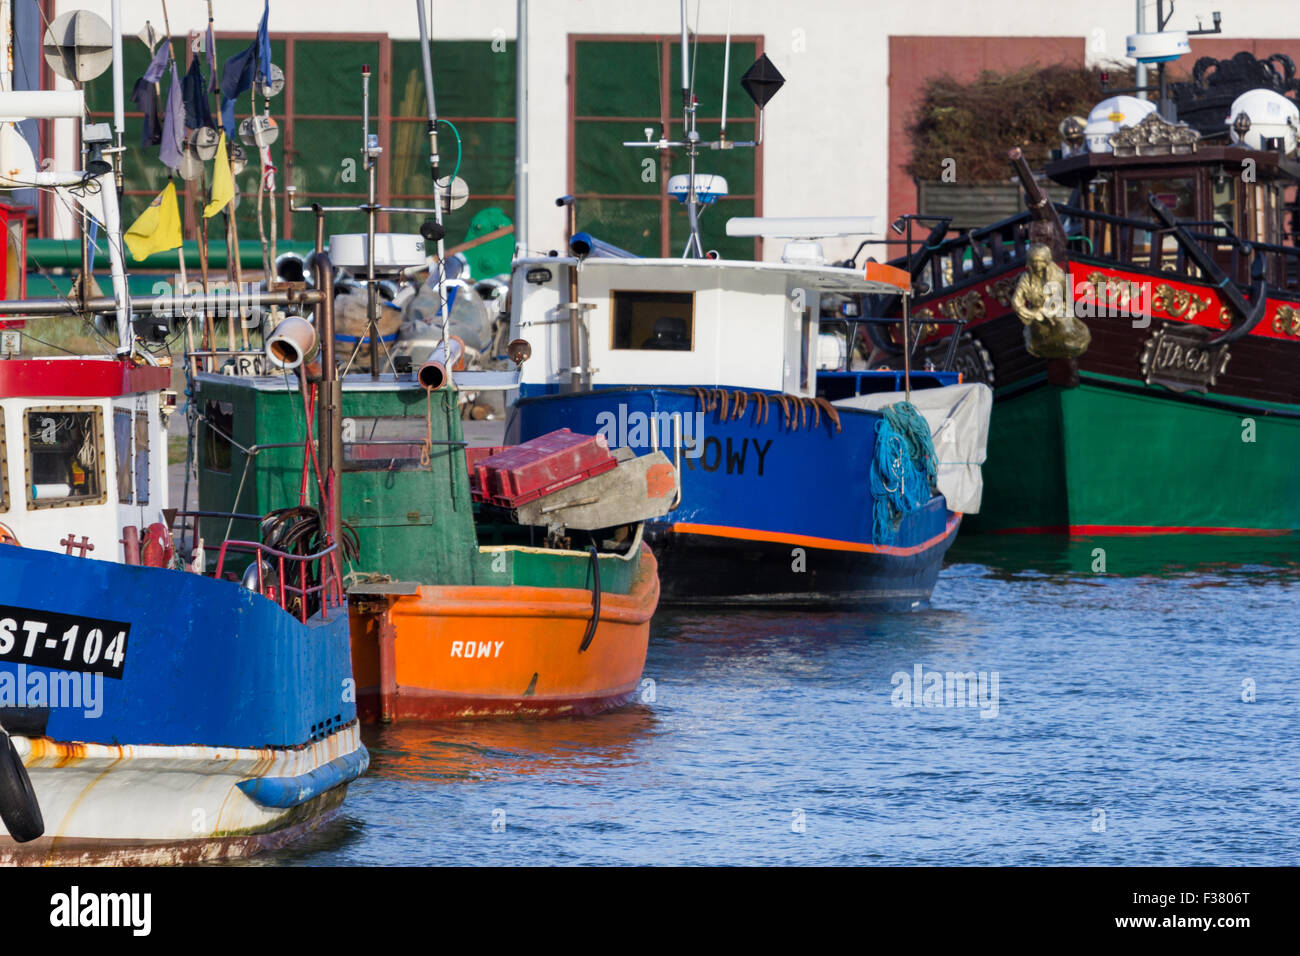 Il Seaport nella piccola città di Rowy - Mar Baltico Foto Stock